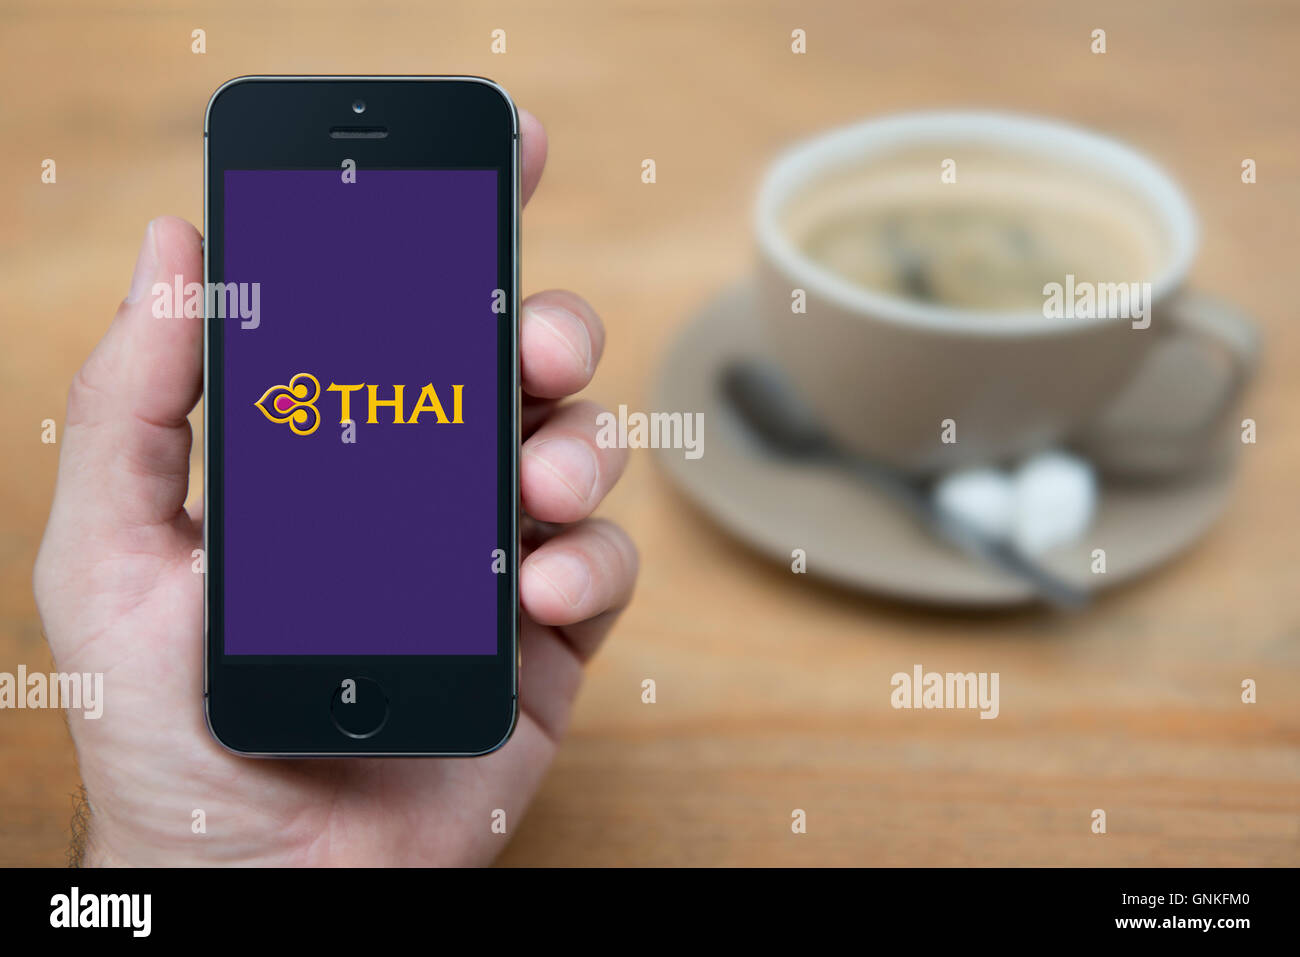 Un uomo guarda al suo iPhone che visualizza la Thai Airways logo, mentre sat con una tazza di caffè (solo uso editoriale). Foto Stock